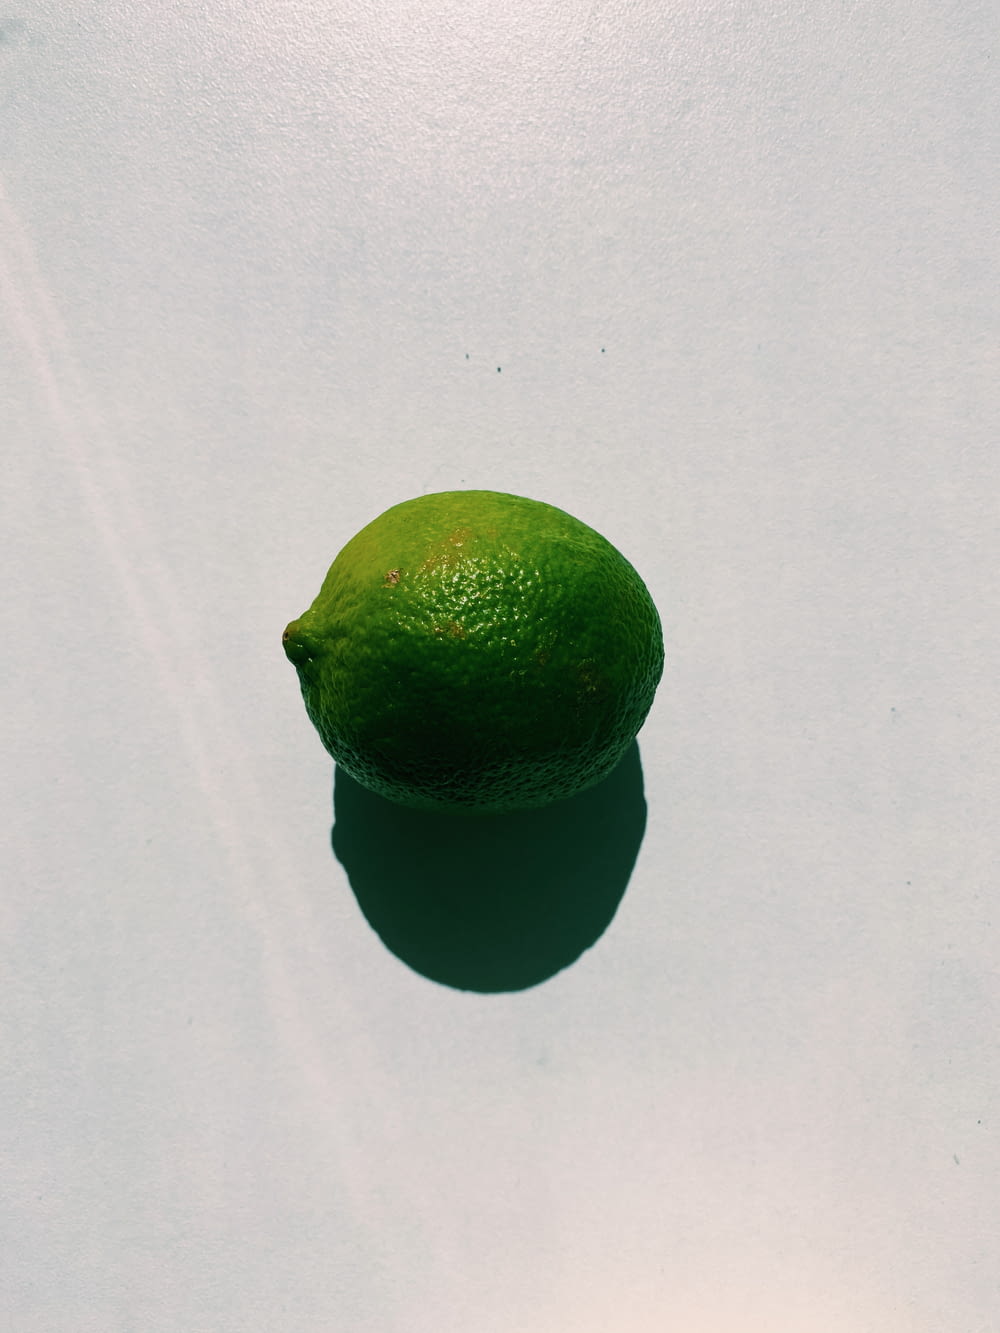 green lemon on white table